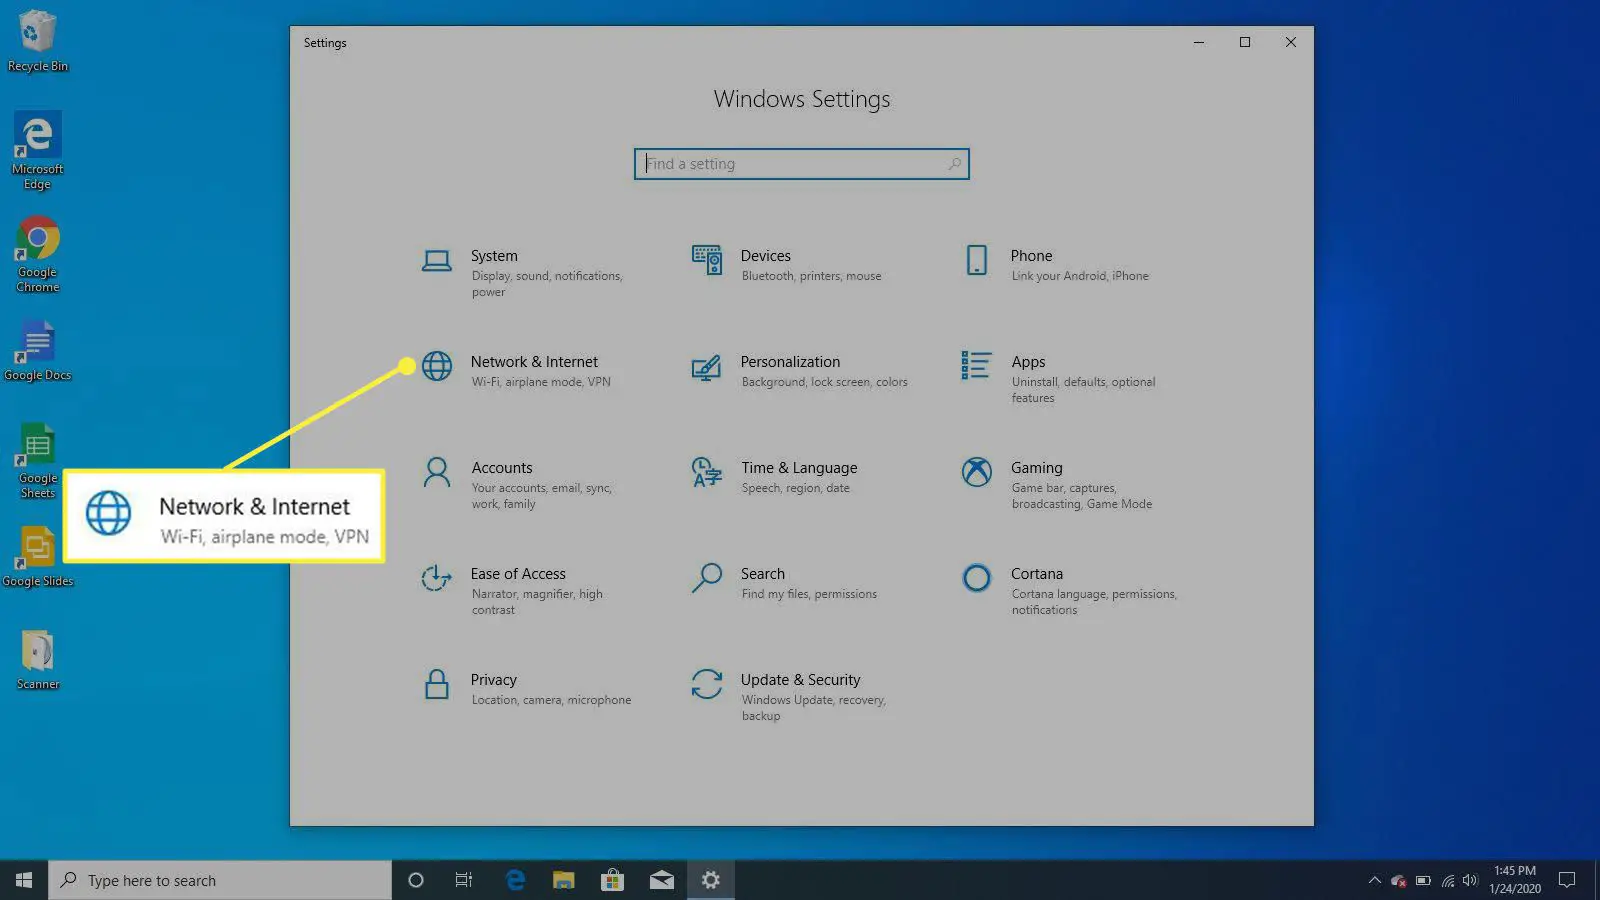 Configurações do Windows no Windows 10.